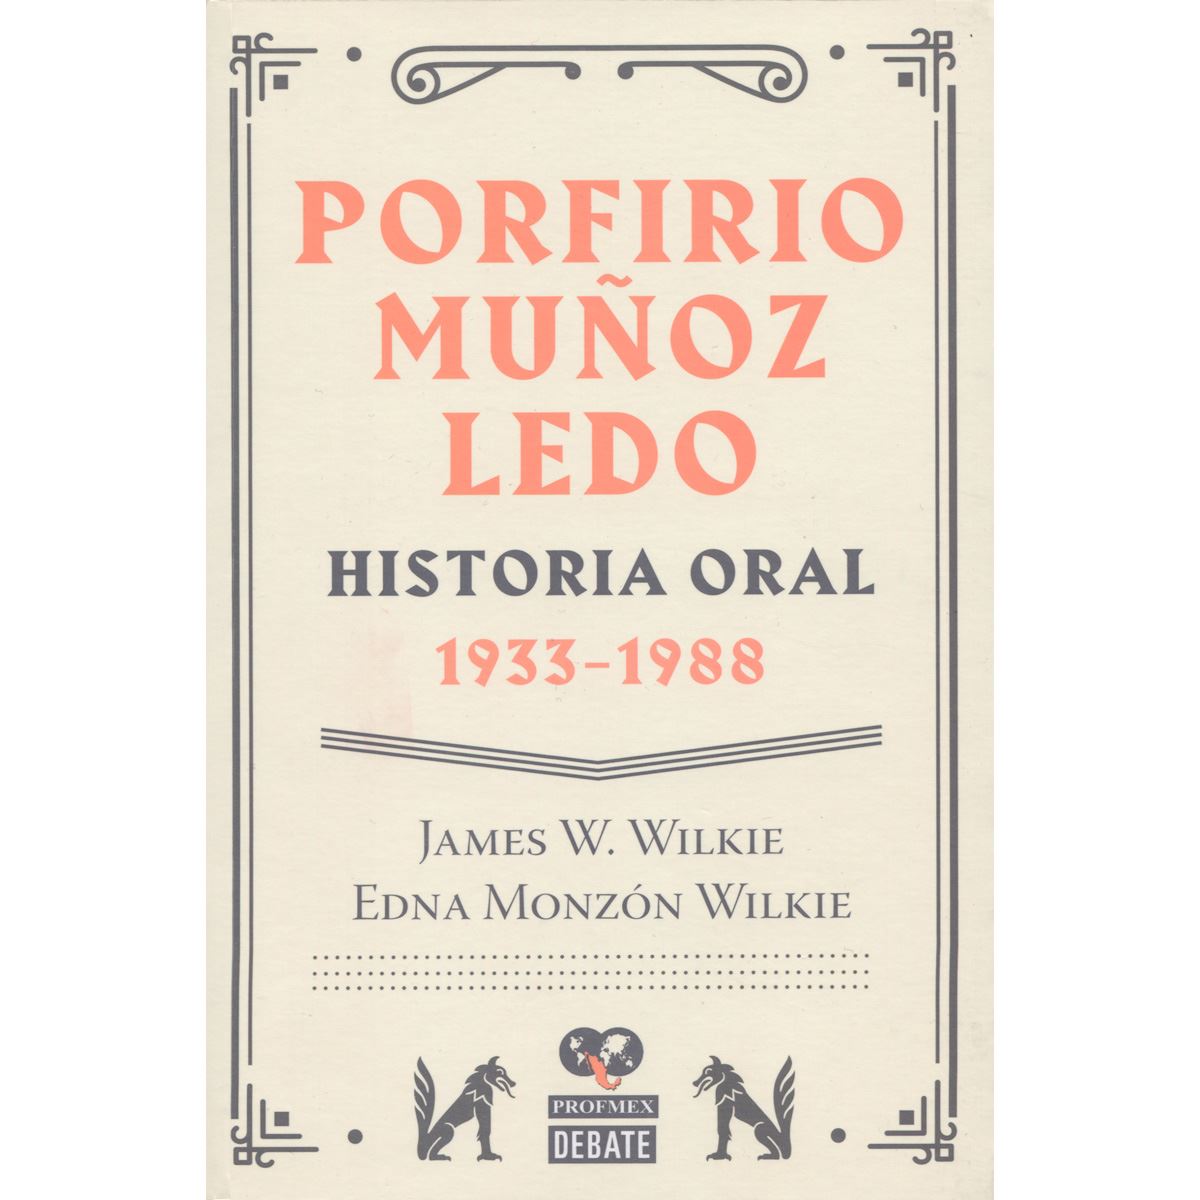 Porfirio Muñoz Ledo: Historia oral 1933-1988